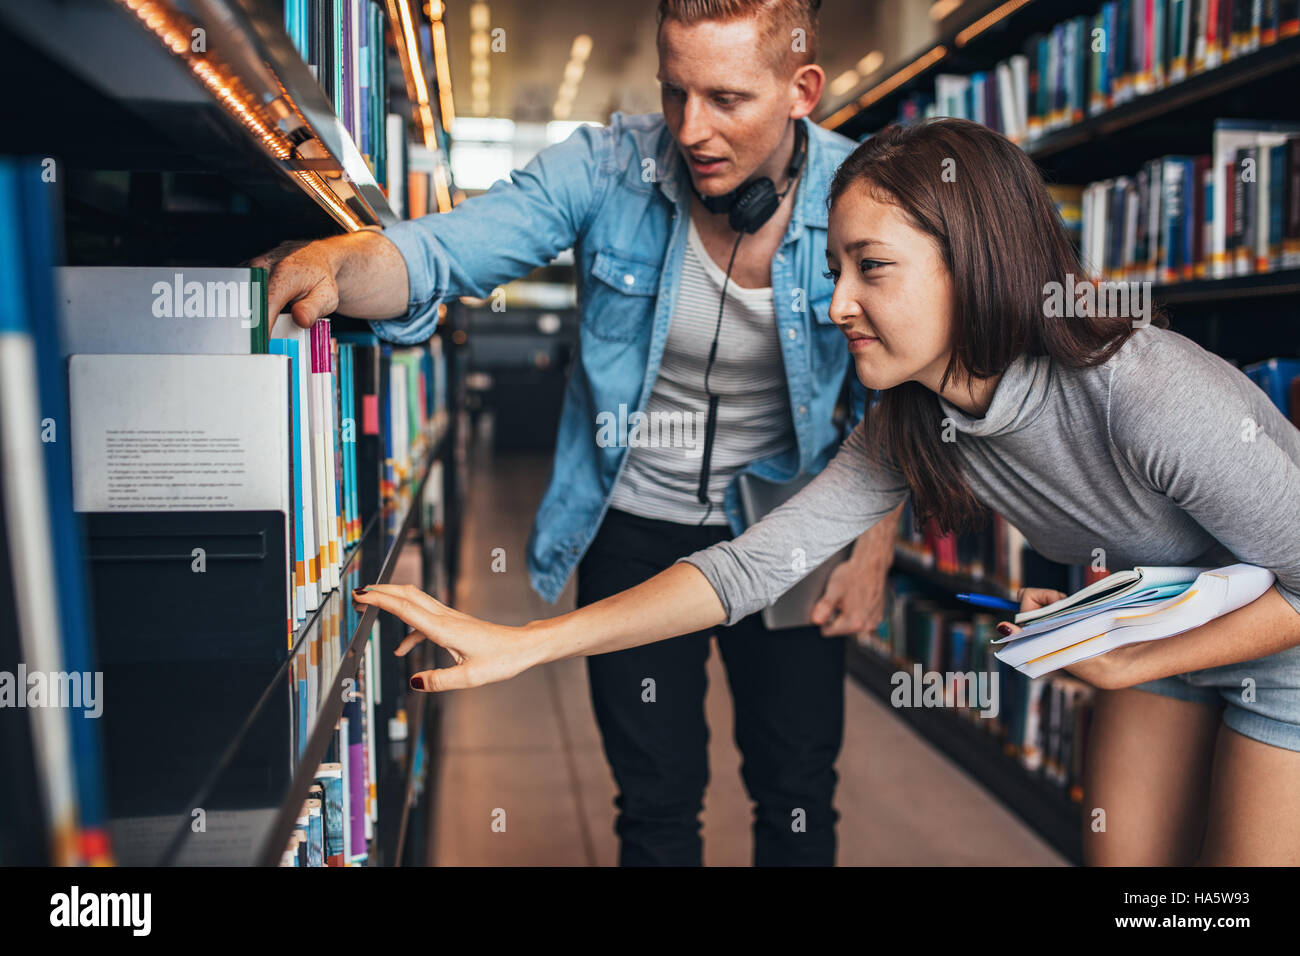 Los jóvenes estudiantes encontrar libros de referencia en la biblioteca de la universidad. El hombre y la mujer en la búsqueda de información para sus estudios. Foto de stock